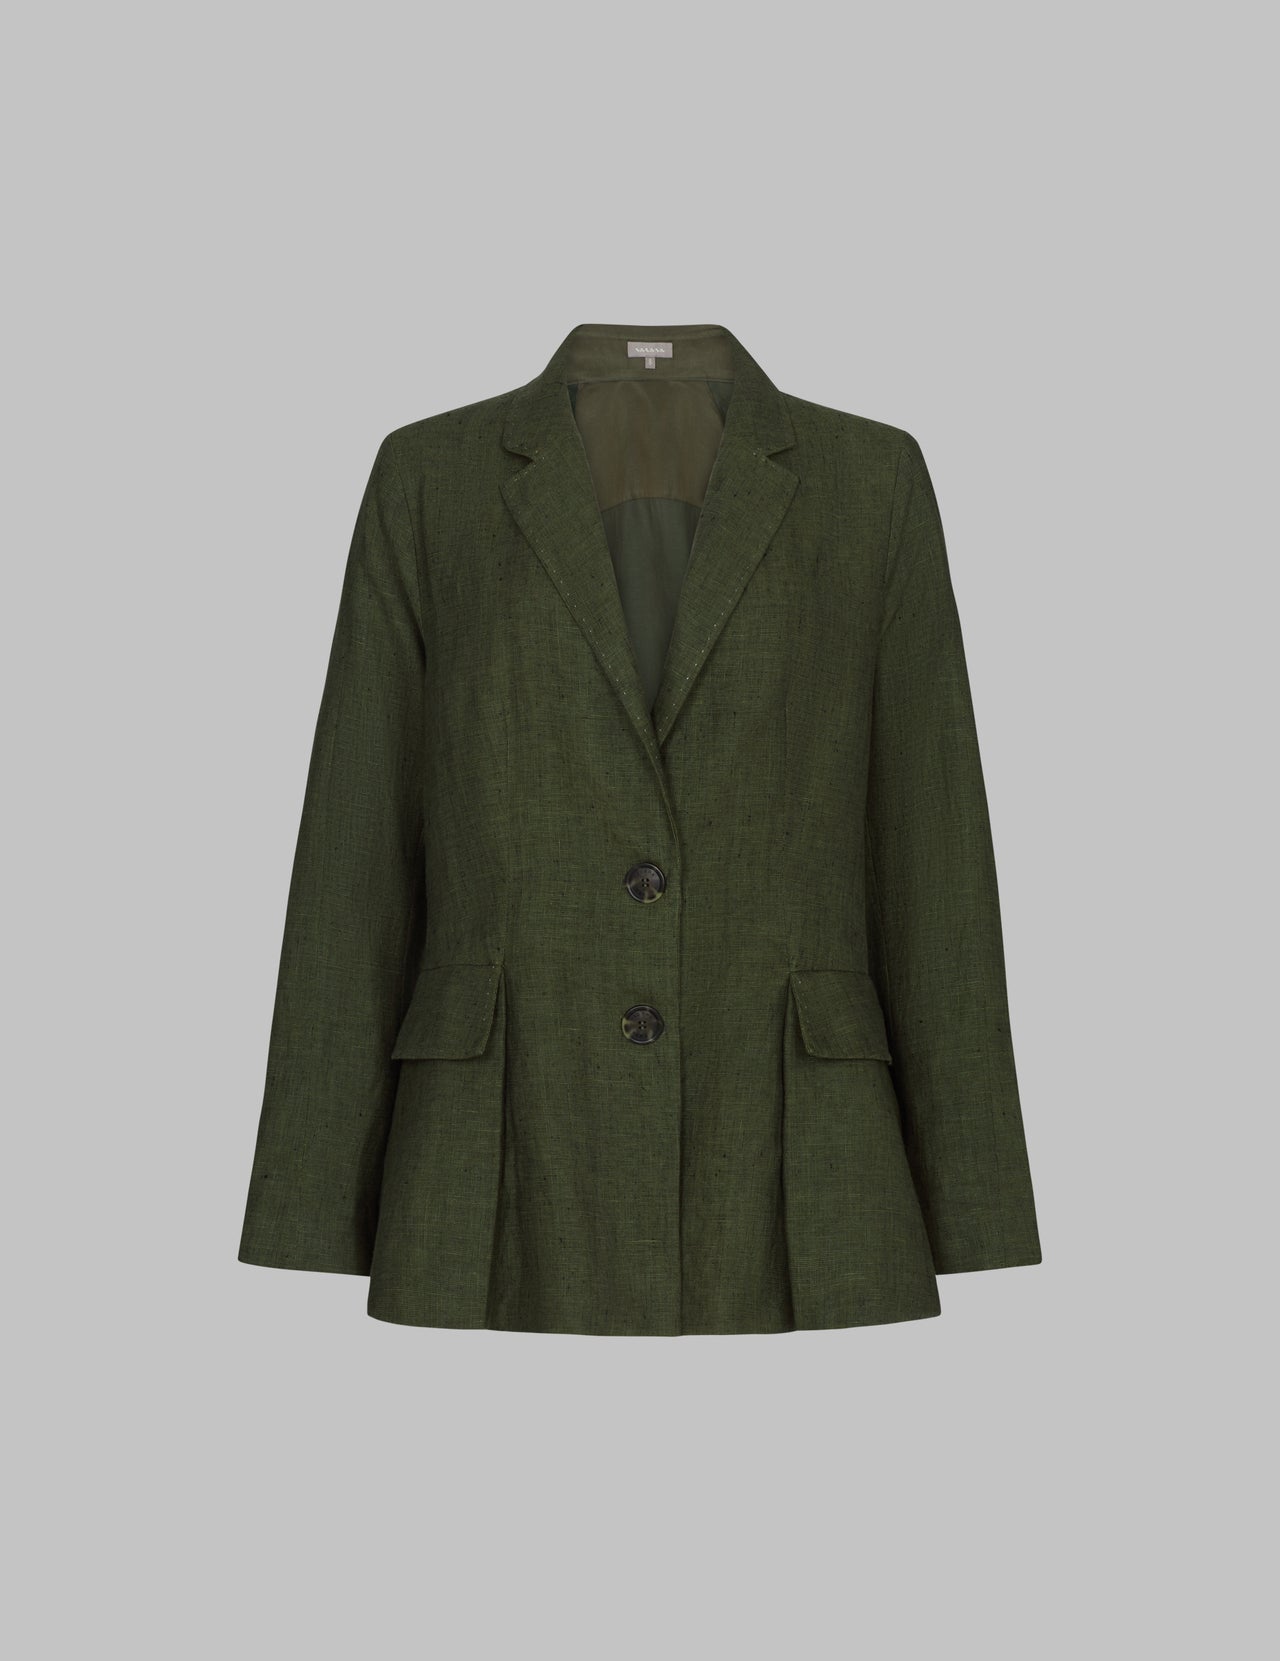  Dark Olive Linen Caldera Blazer Jacket | Varana 